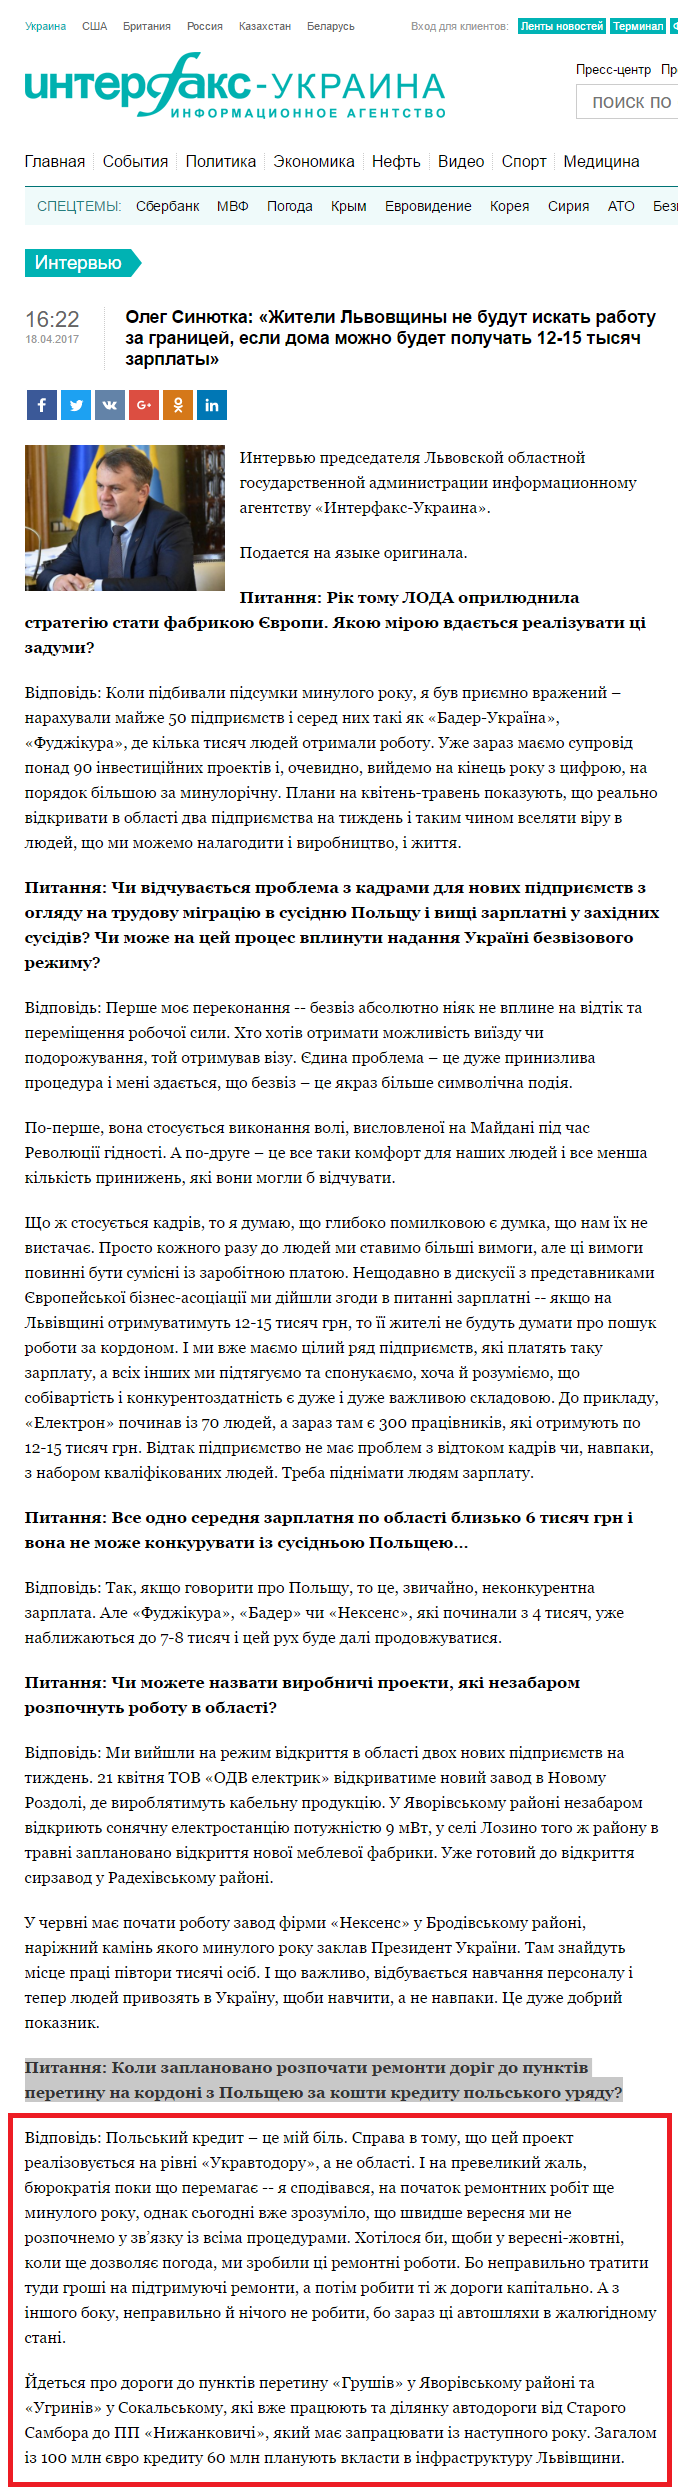 http://interfax.com.ua/news/interview/416414.html